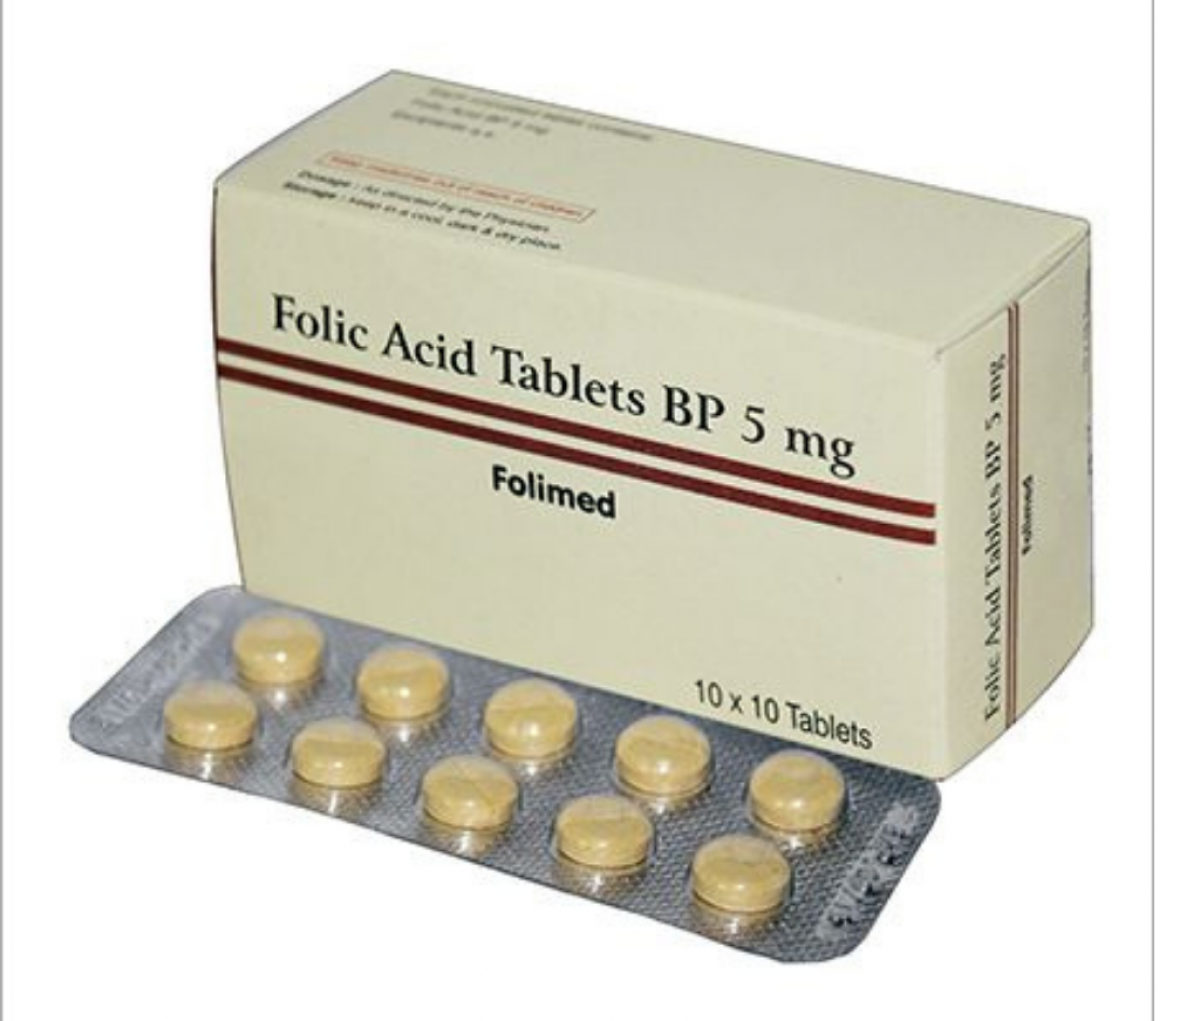 Folic acid 5mg. Фолиевая кислота 5 мг. Кетоконазол на латинском. Кислота в Таблек\тках по 5 мг.